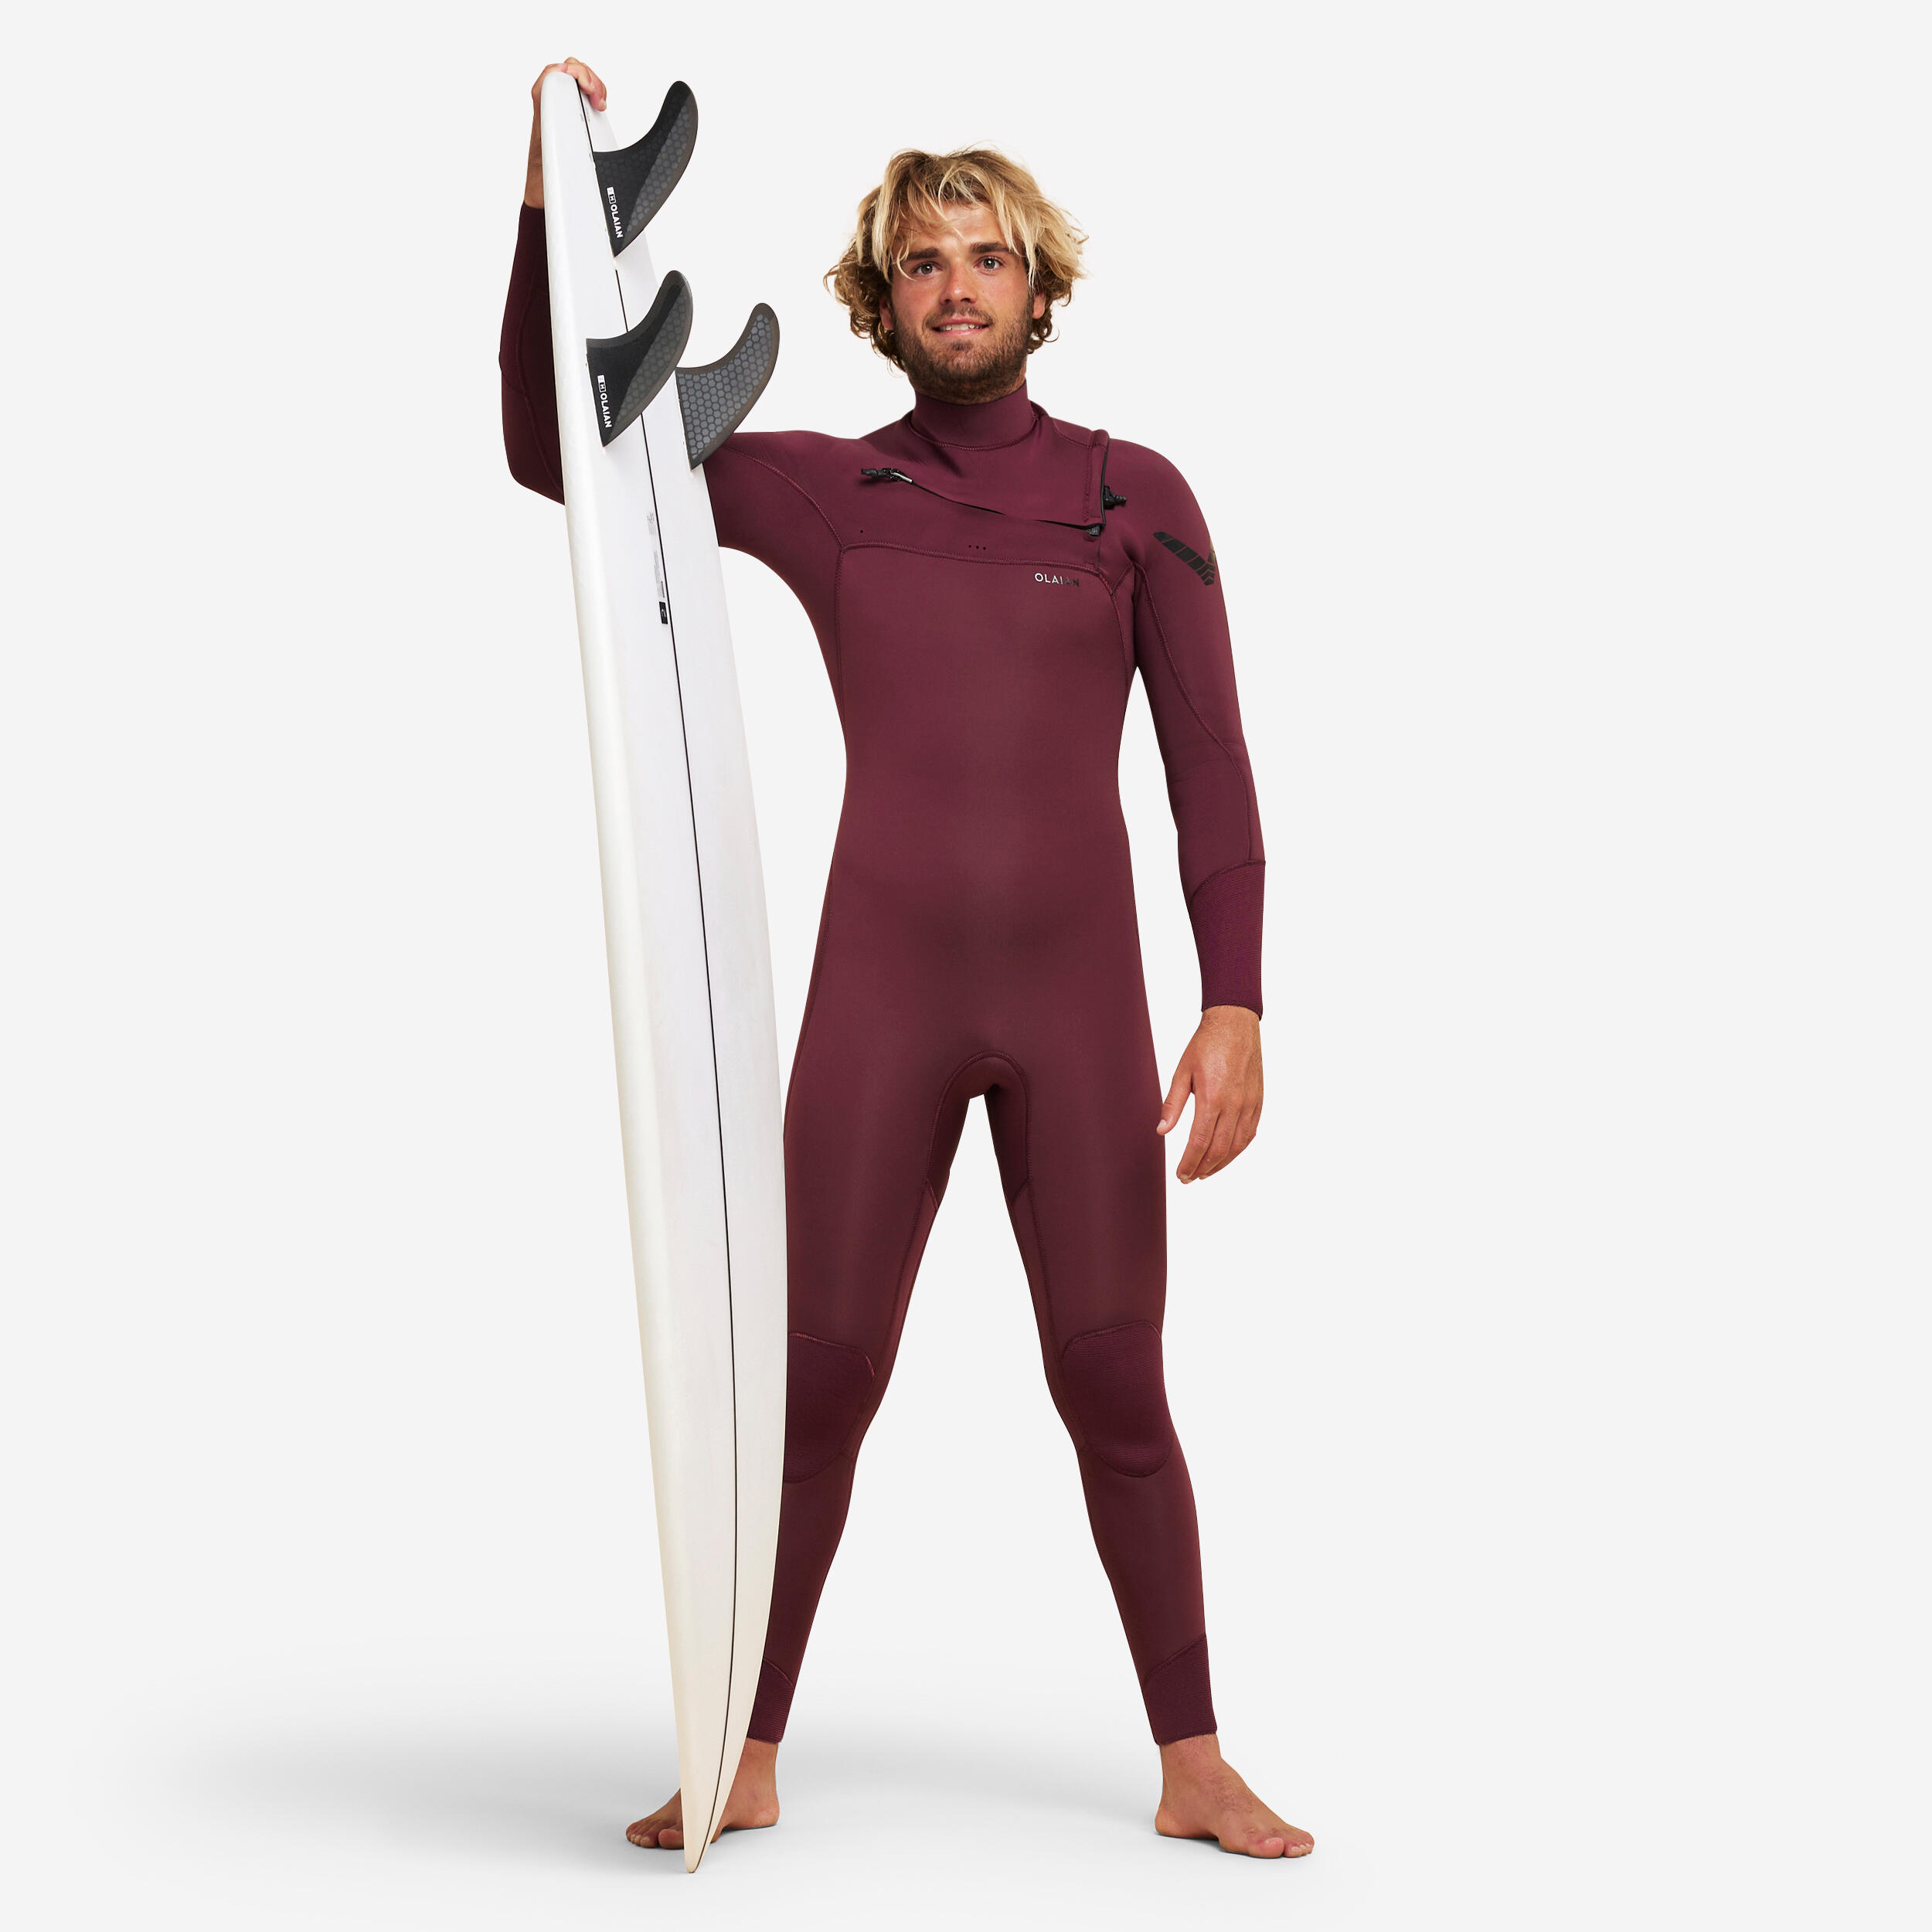 Men's surfing 4/3 mm neoprene wetsuit - 900 burgundy 1/13